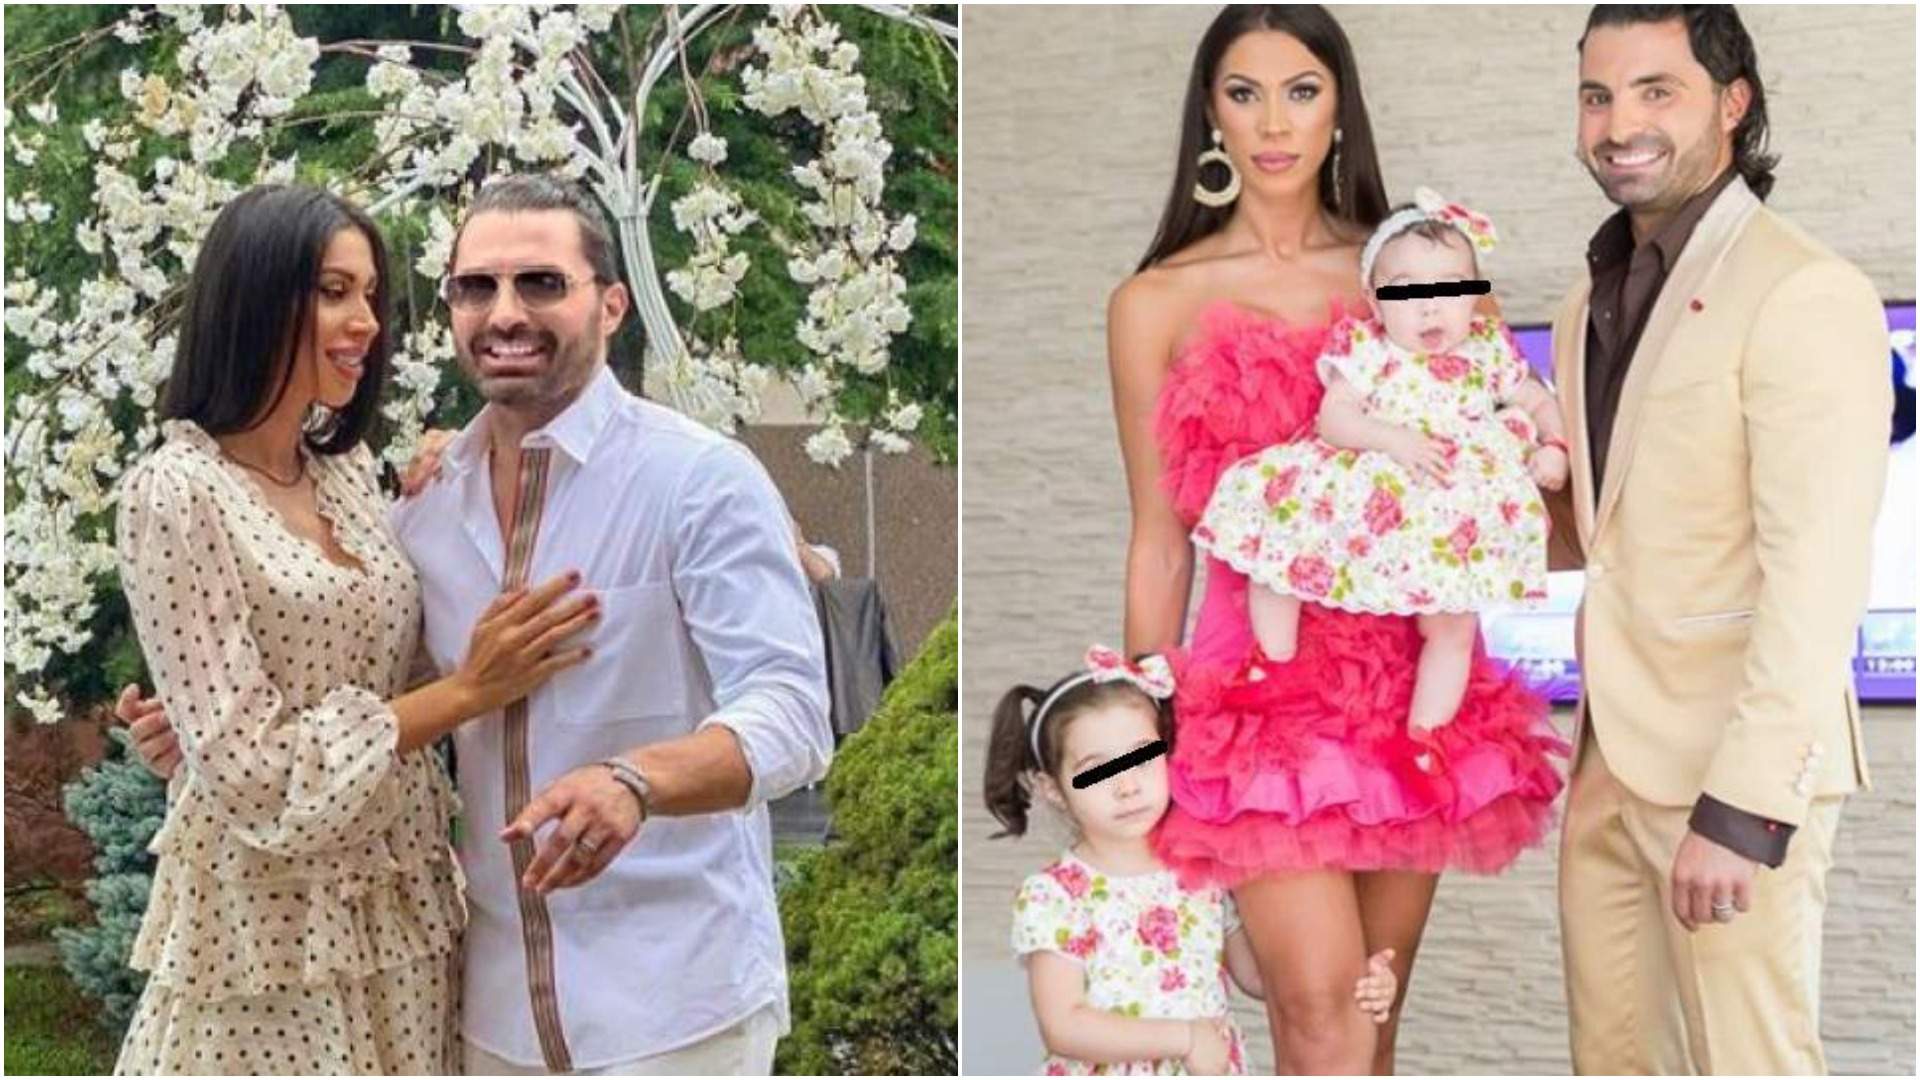 Colaj cu Pepe și Raluca în perioada în care formau un cuplu, alături de fiicele lor.